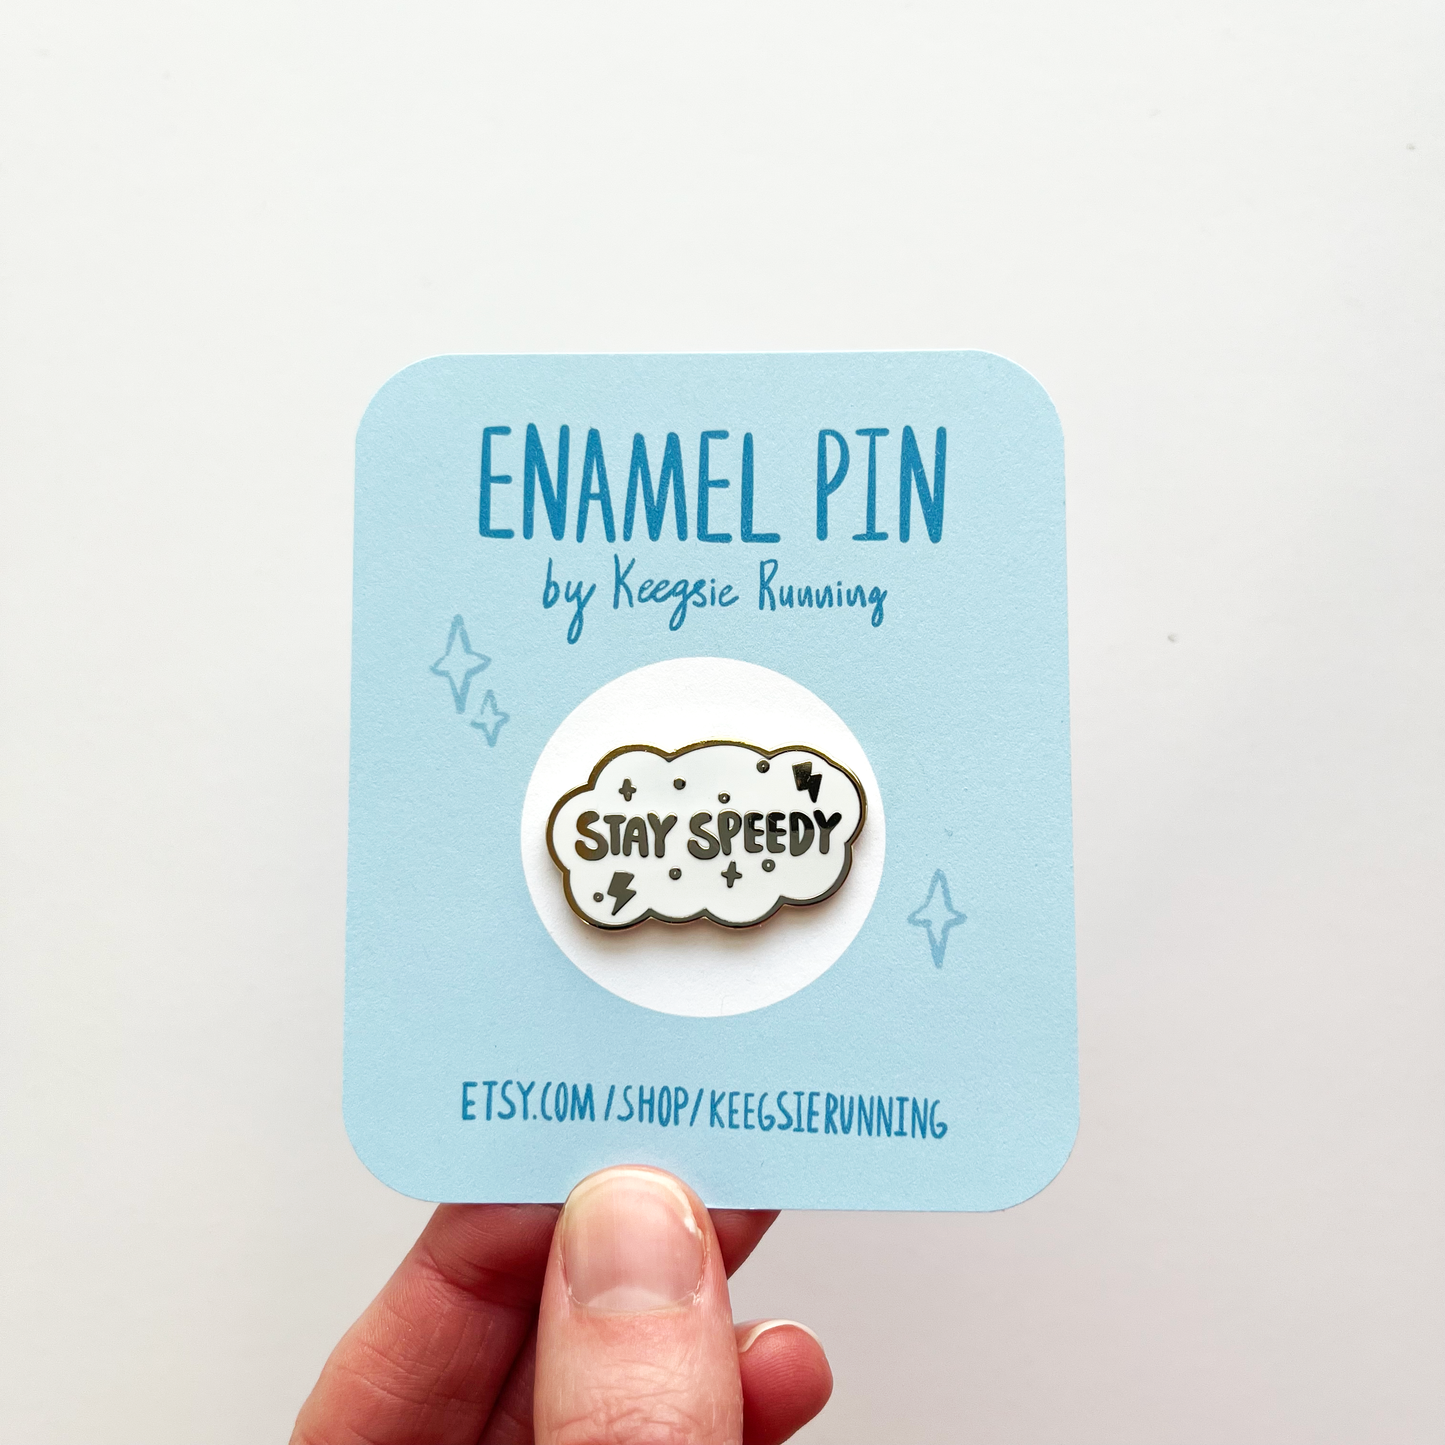 Stay speedy enamel pin on backing card 